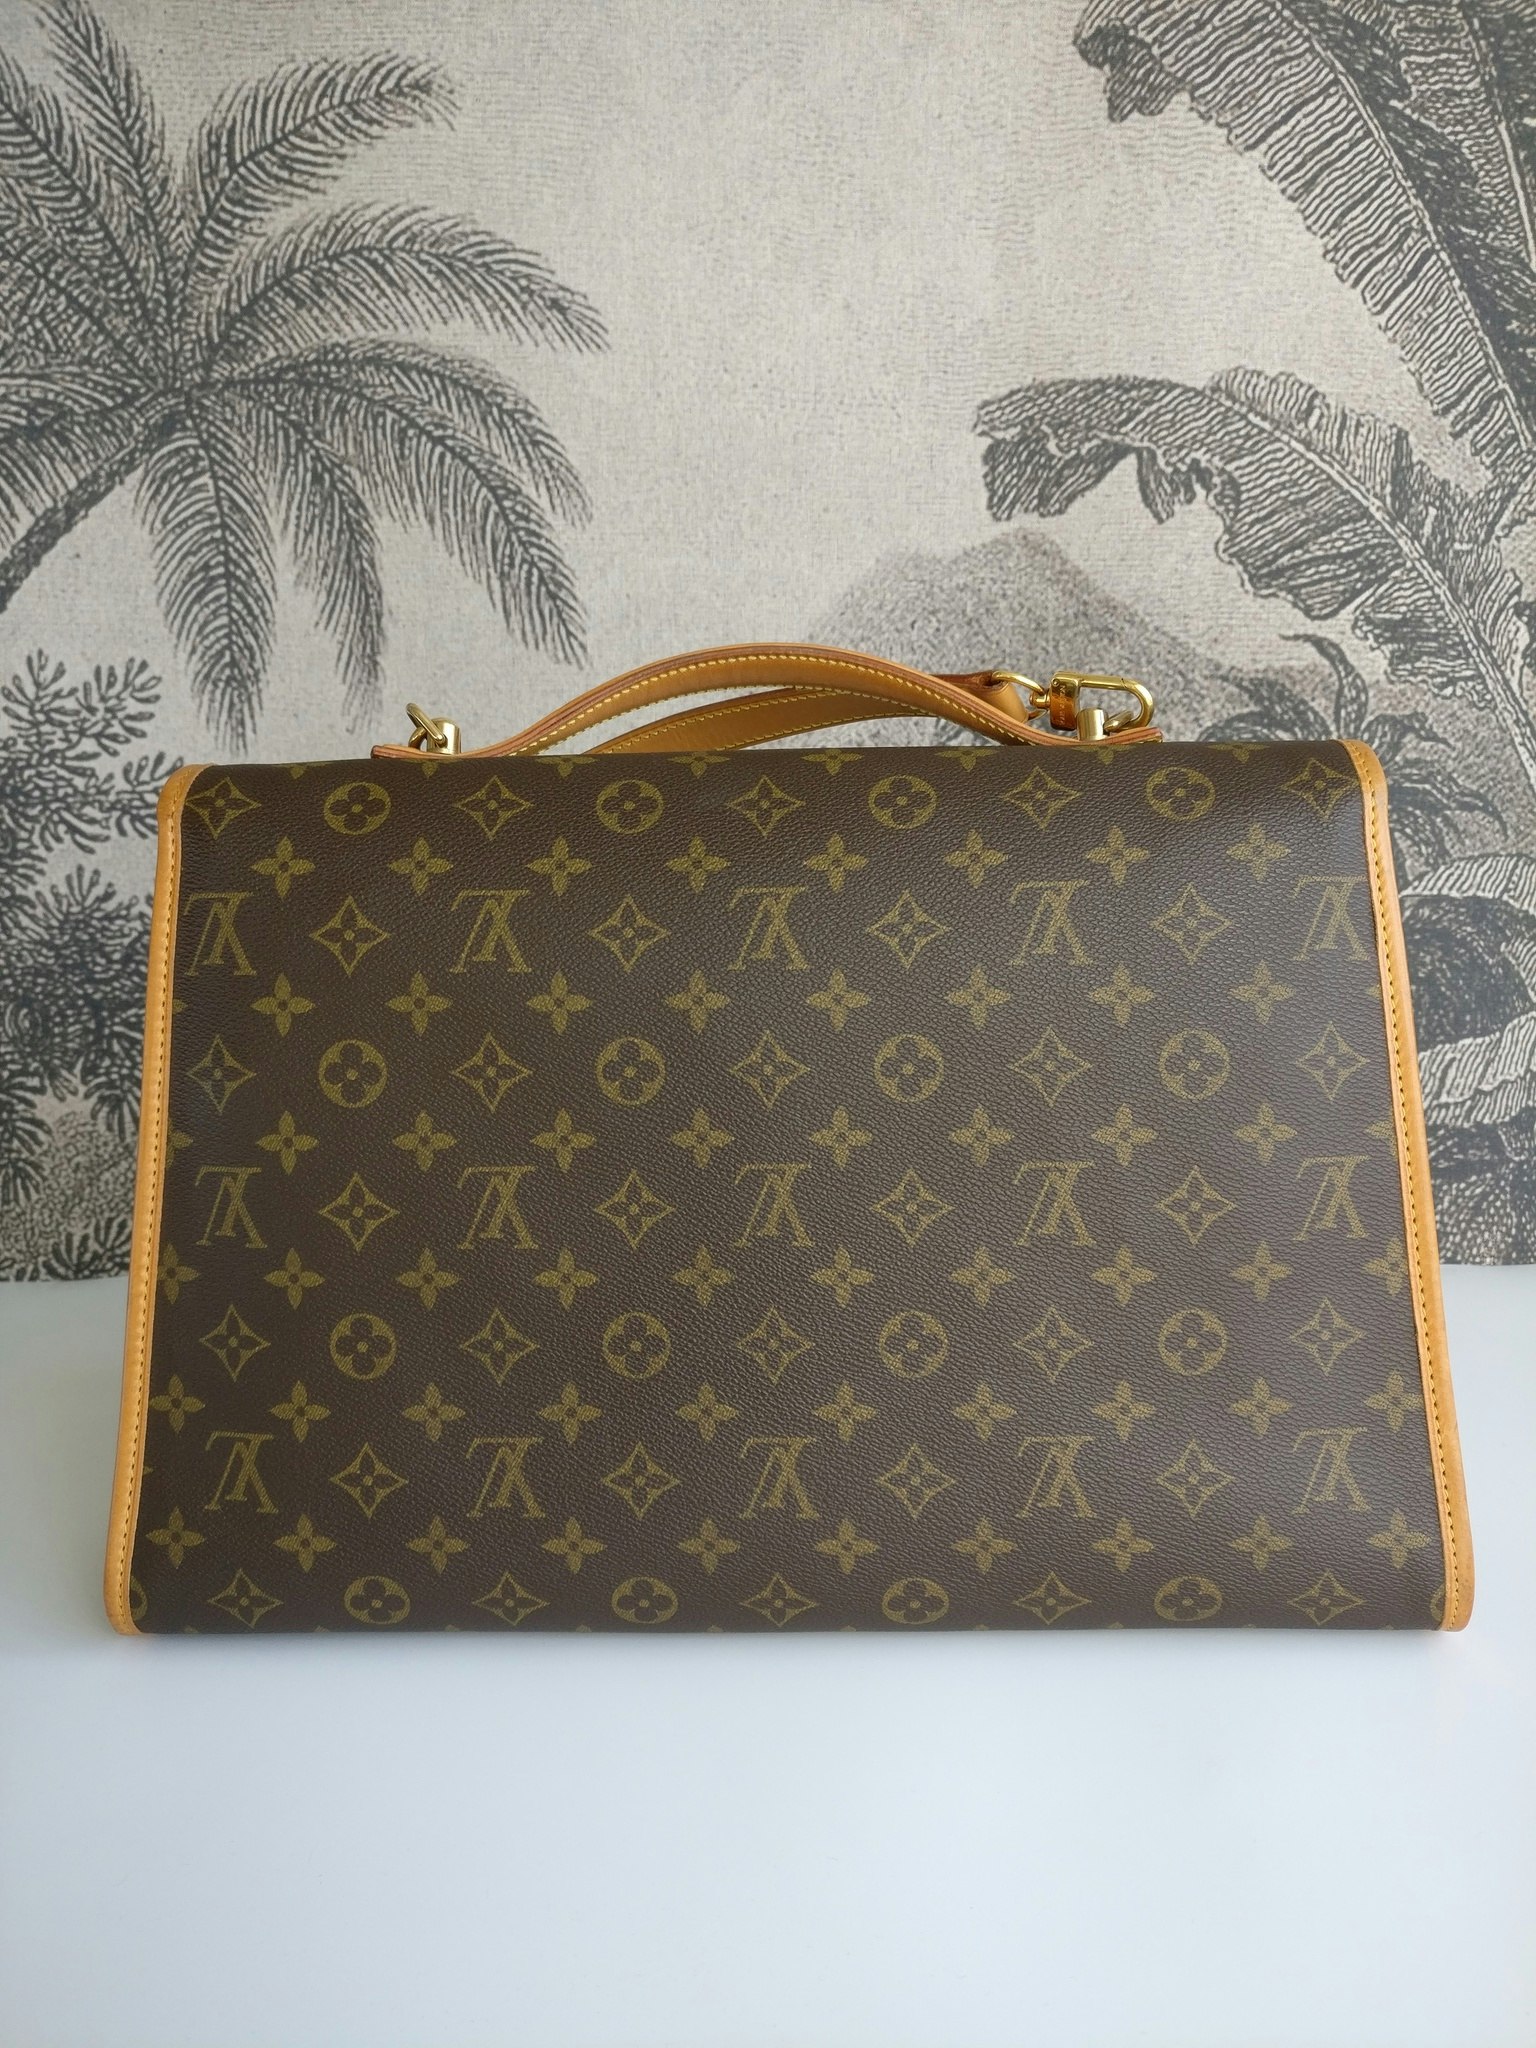 Louis Vuitton Bel Air briefcase - Good or Bag